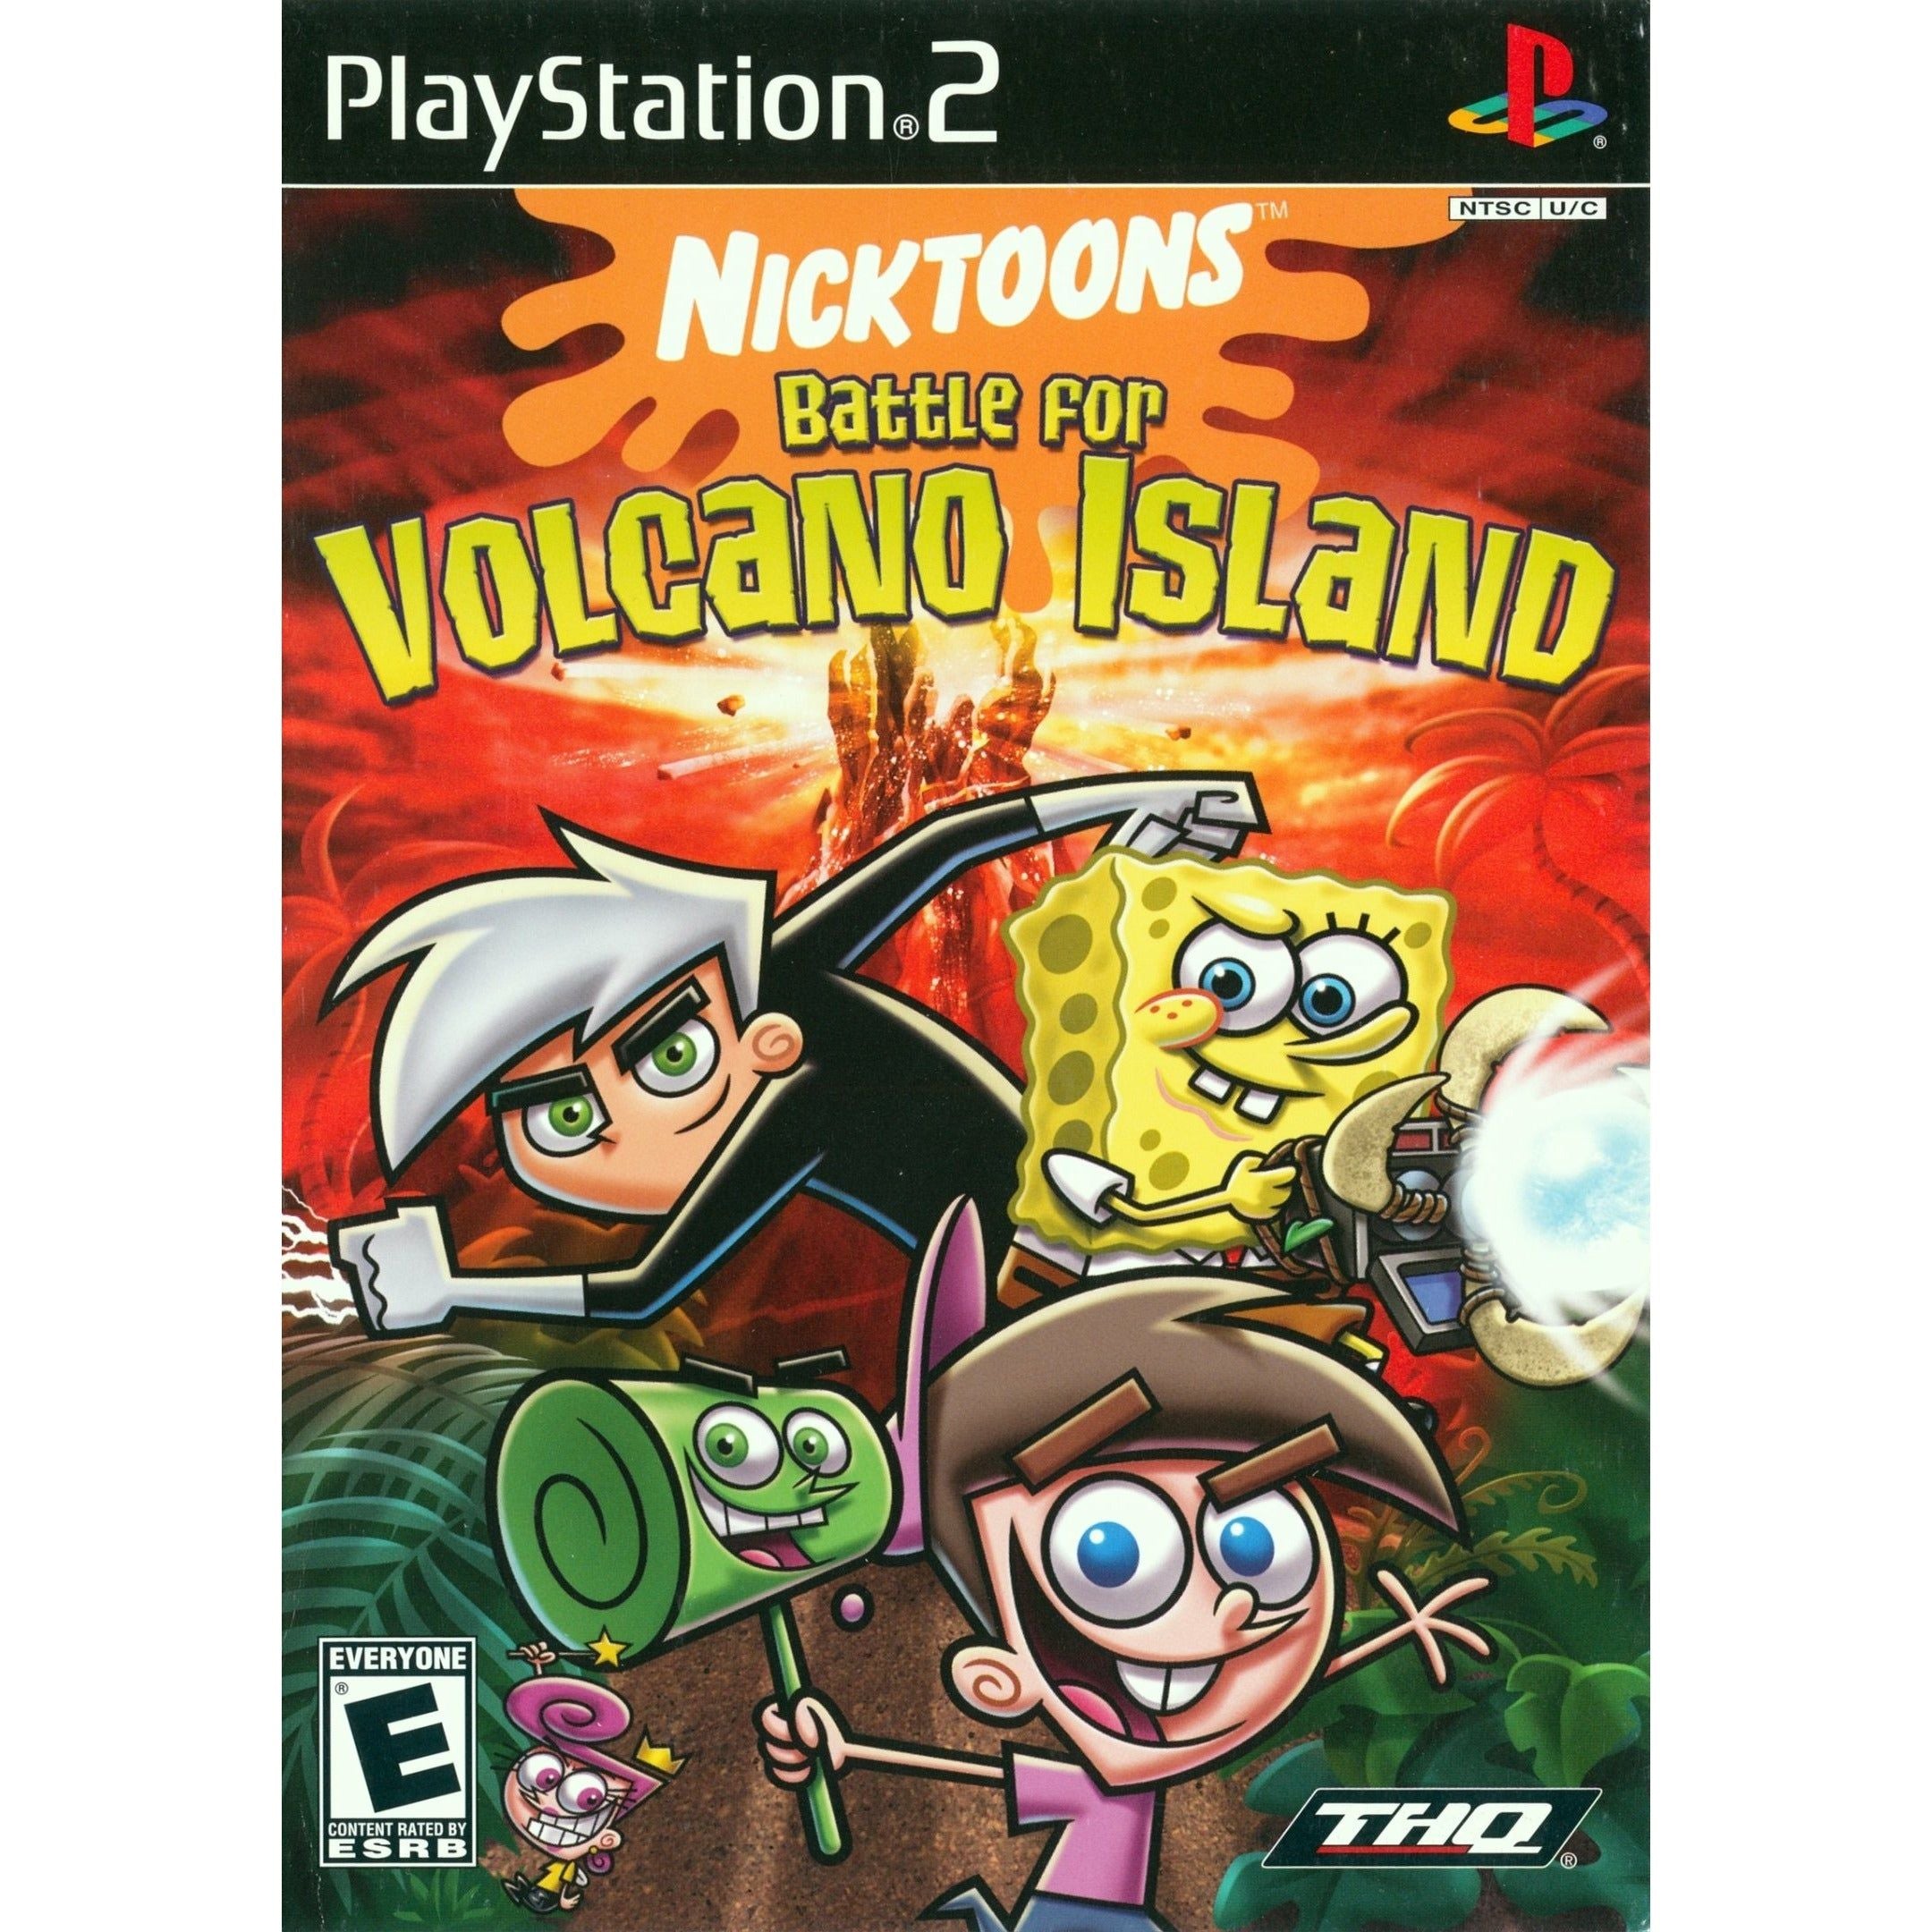 PS2 - La Bataille des Nicktoons pour l'Île Volcan